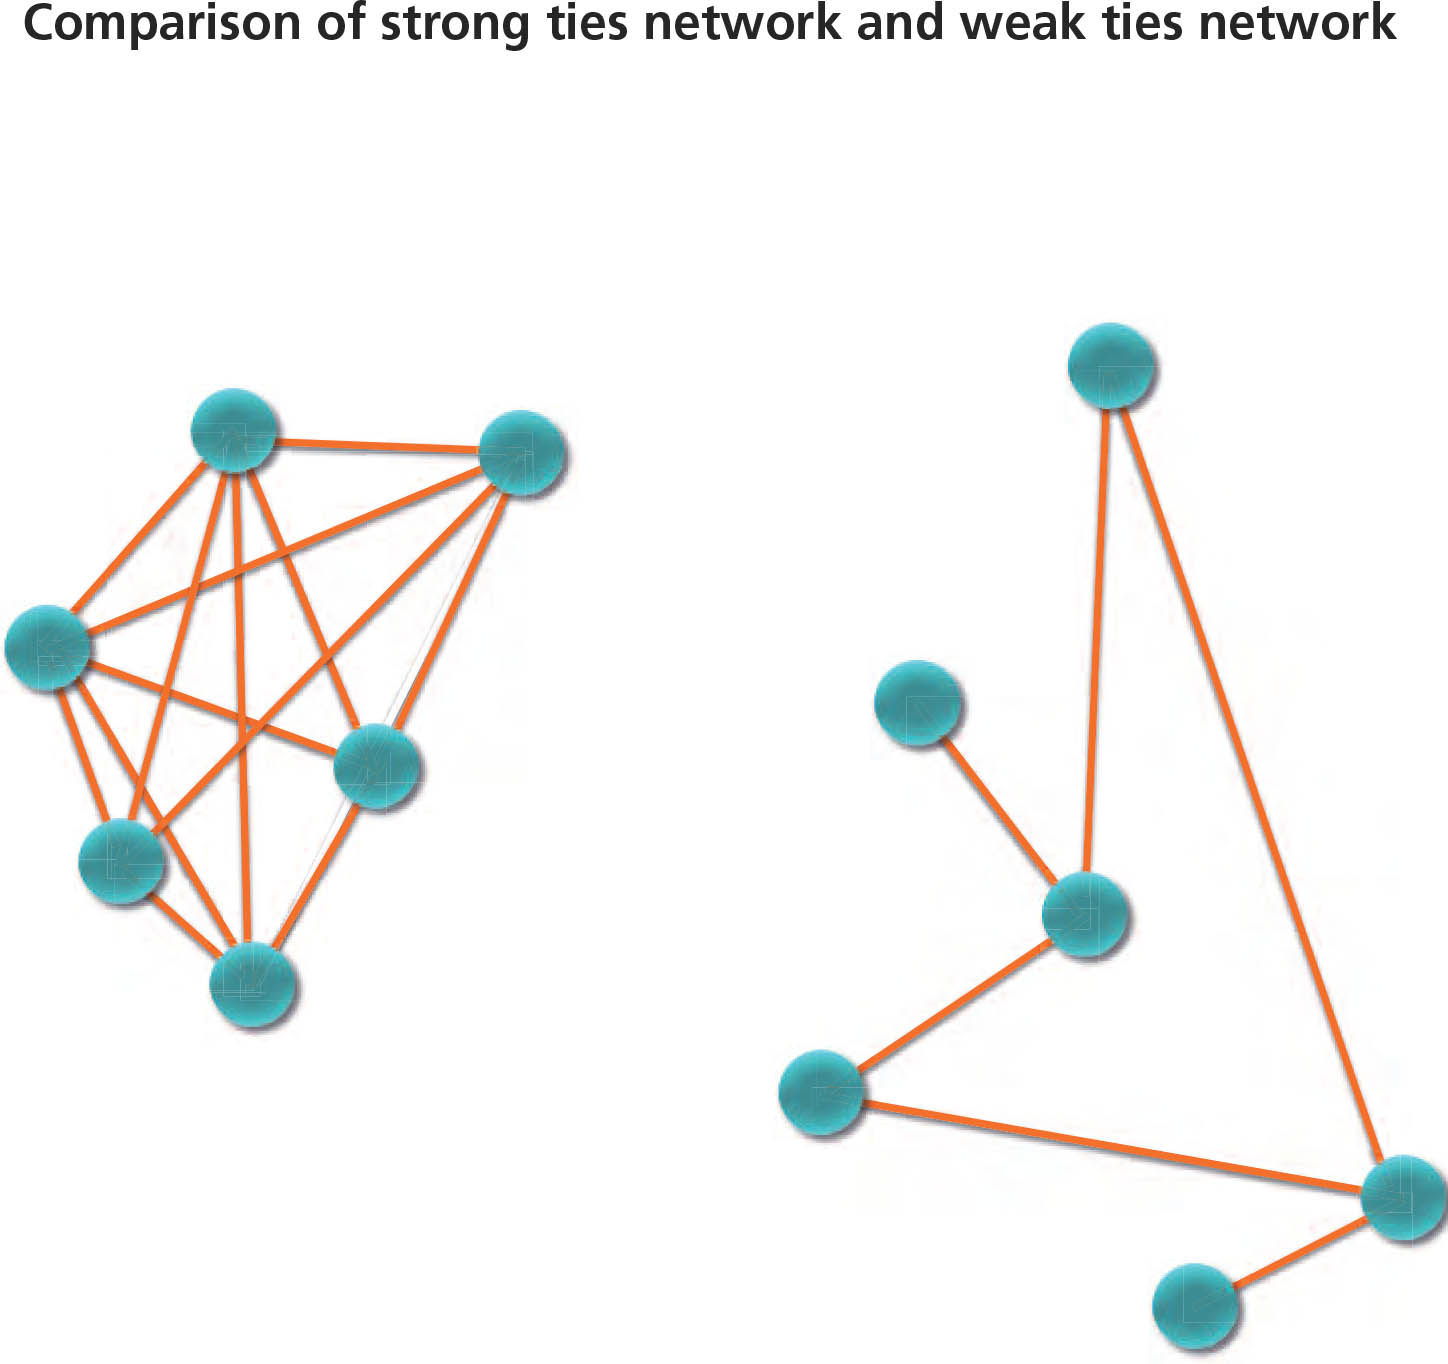 Weak ties networks